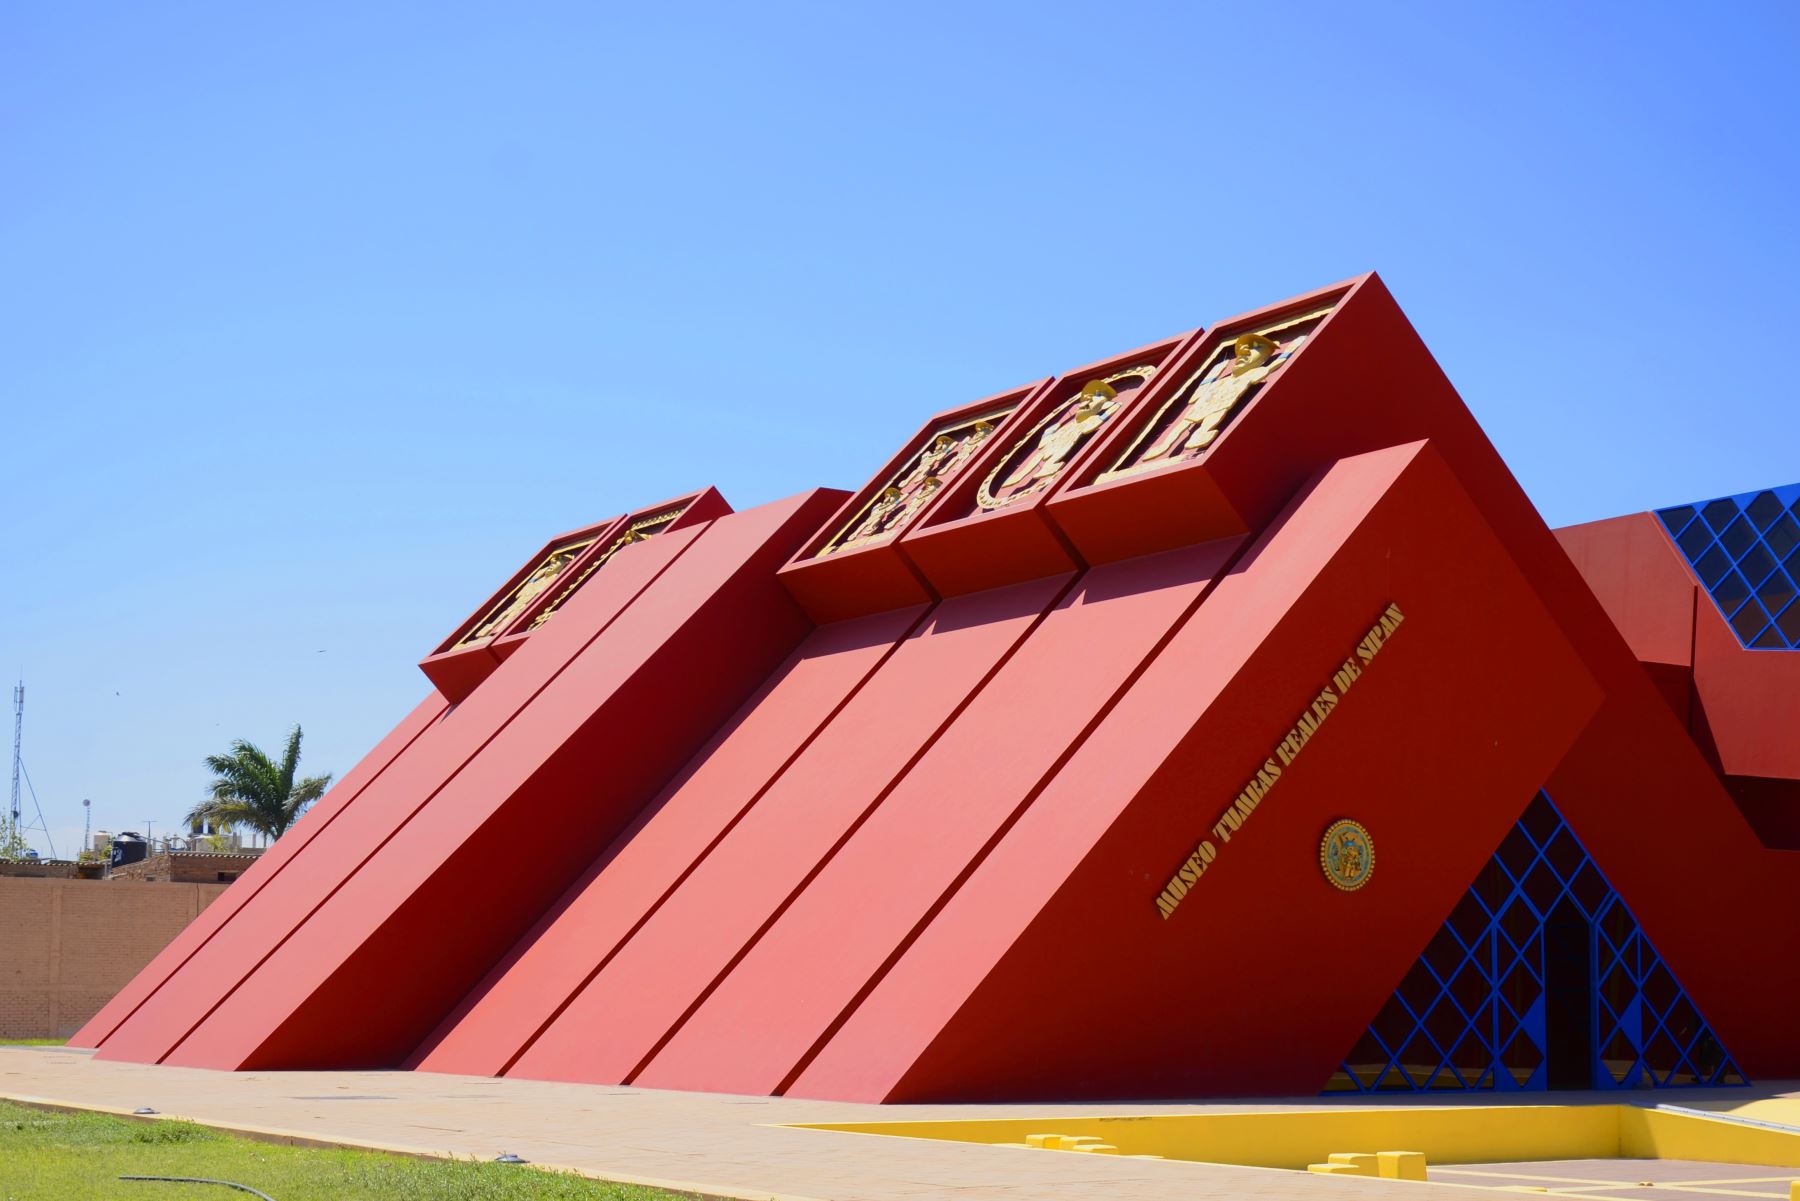 El Museo Tumbas Reales de Sipán presenta un diseño arquitectónico inspirado en las antiguas pirámides truncas de la cultura Mochica.